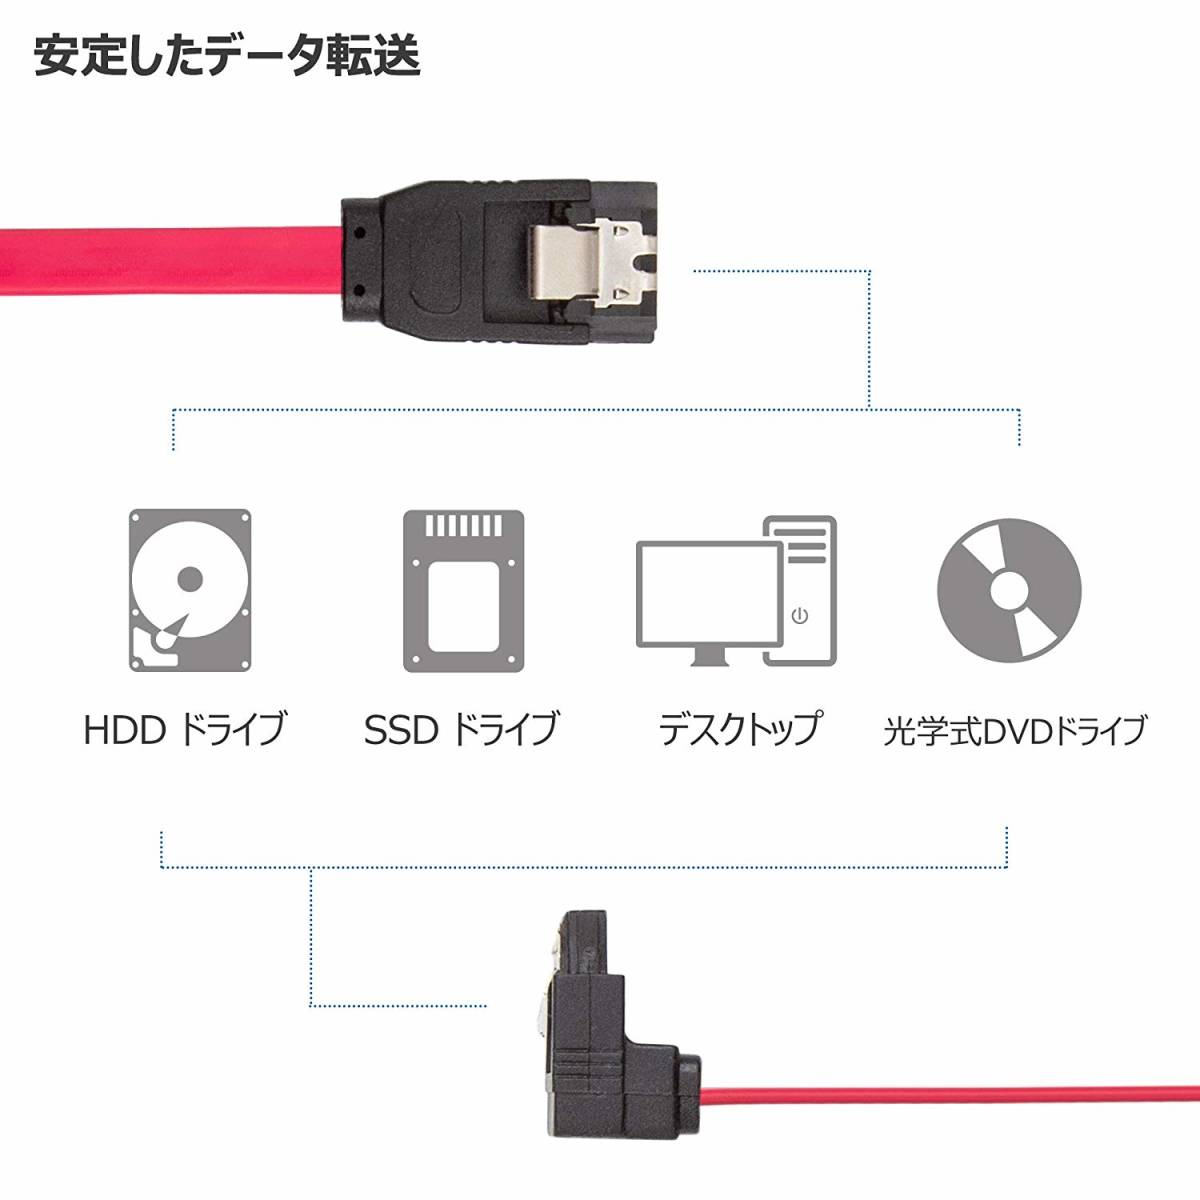 4 шт. комплект SATA кабель L type Sata3 серийный ATA3.0 кабель 6 Gbps соответствует SSD.HDD расширение 45CM